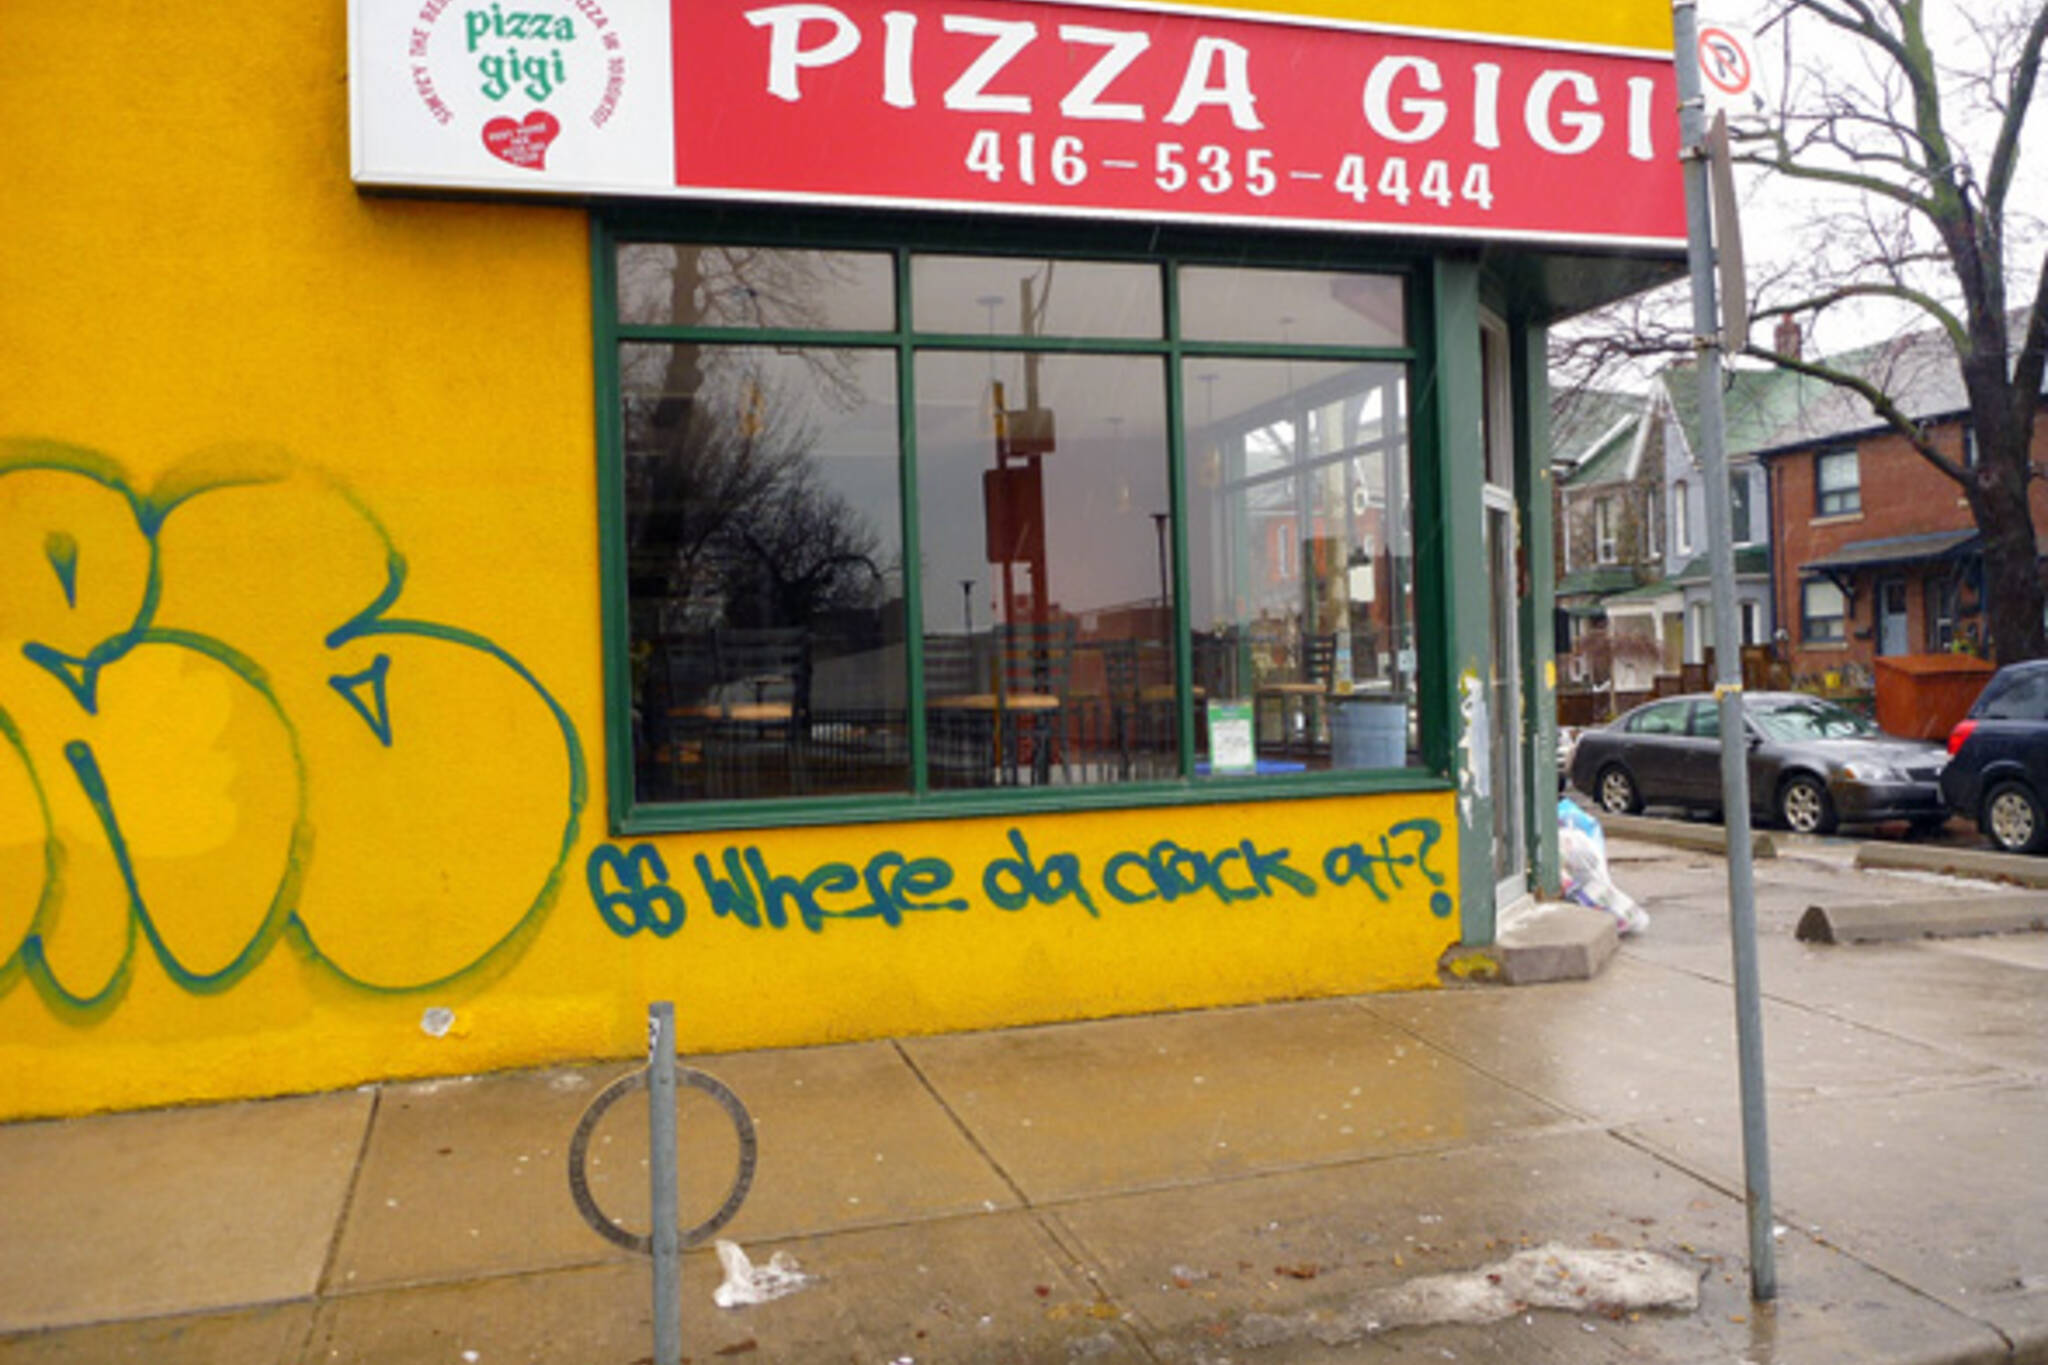 Pizza Gigi graffiti